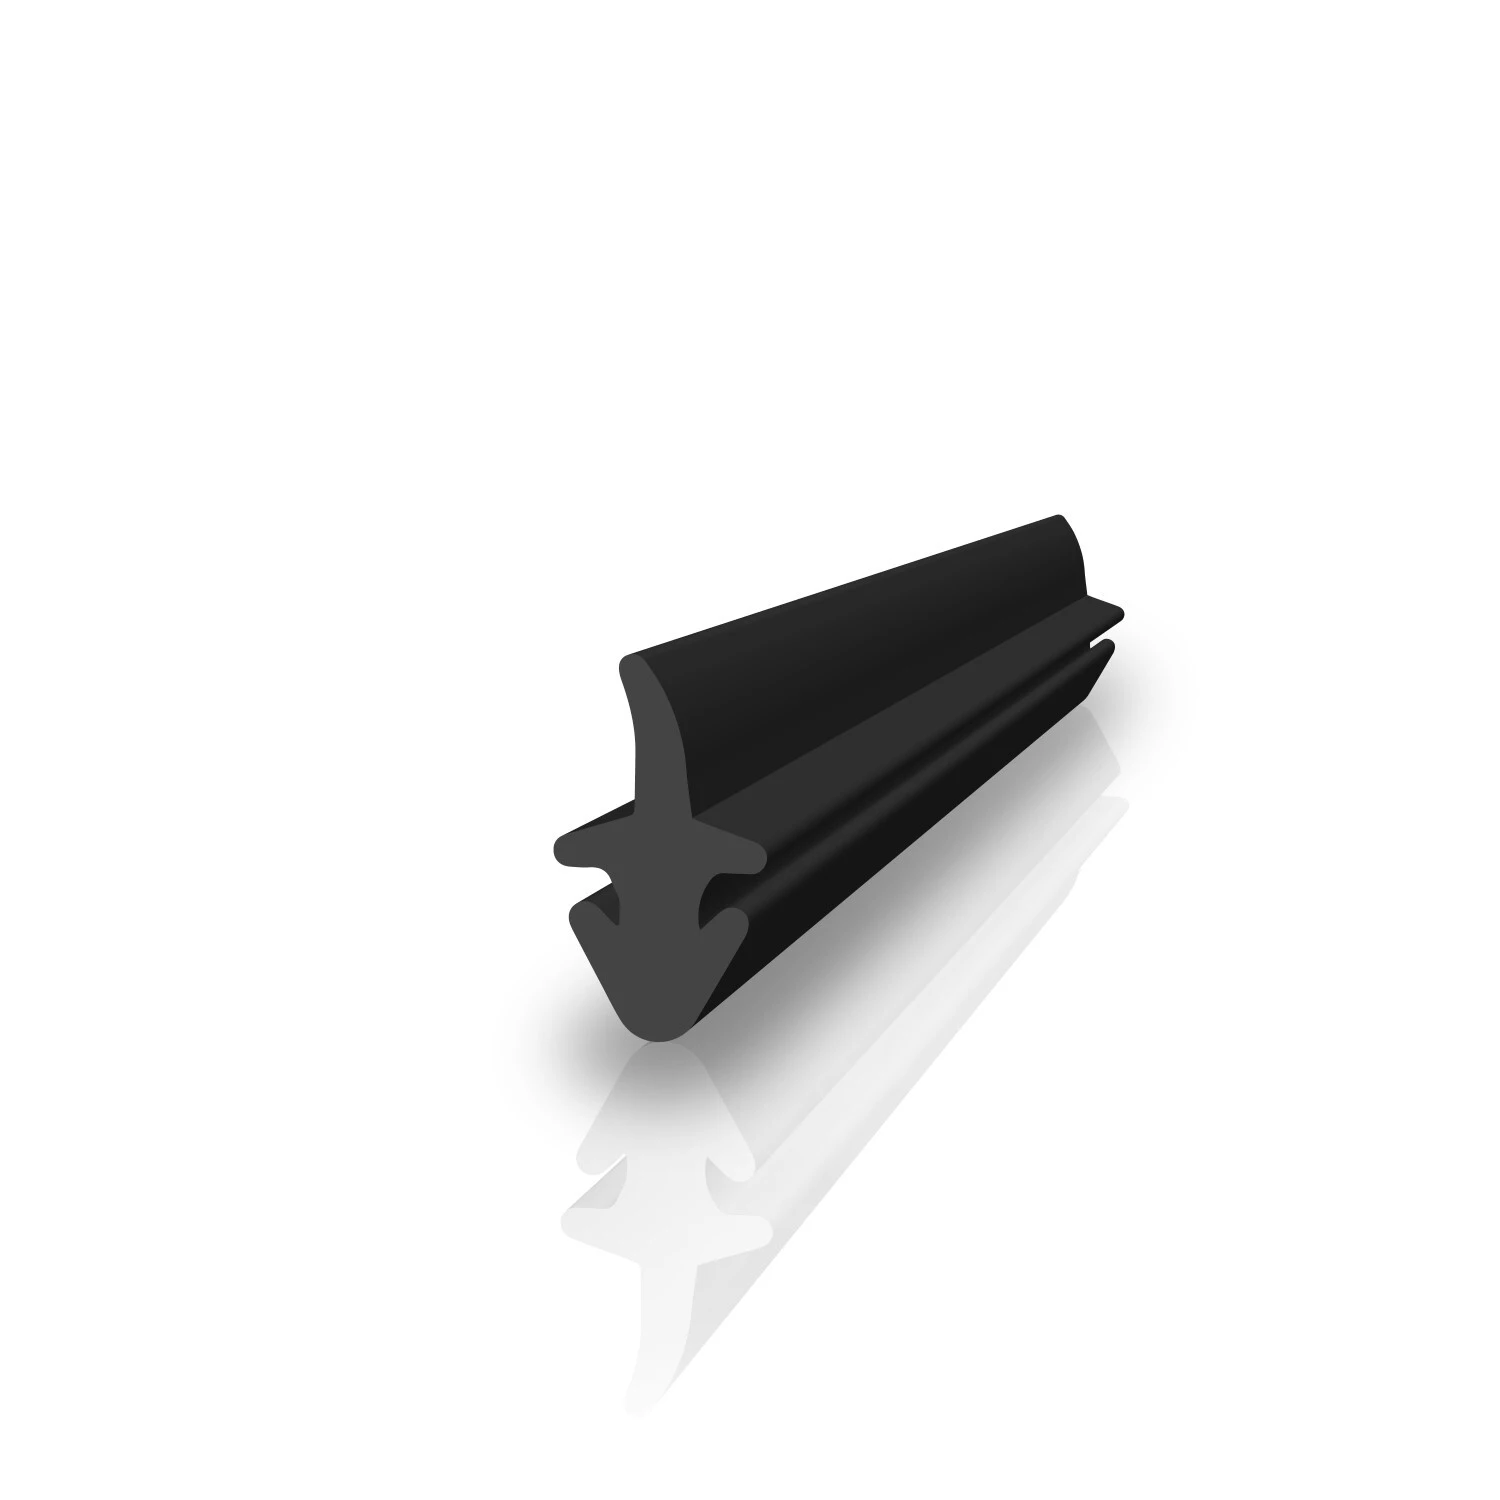 Mitteldichtung für Metall- und Alufenster | 11 mm Höhe | Farbe: schwarz